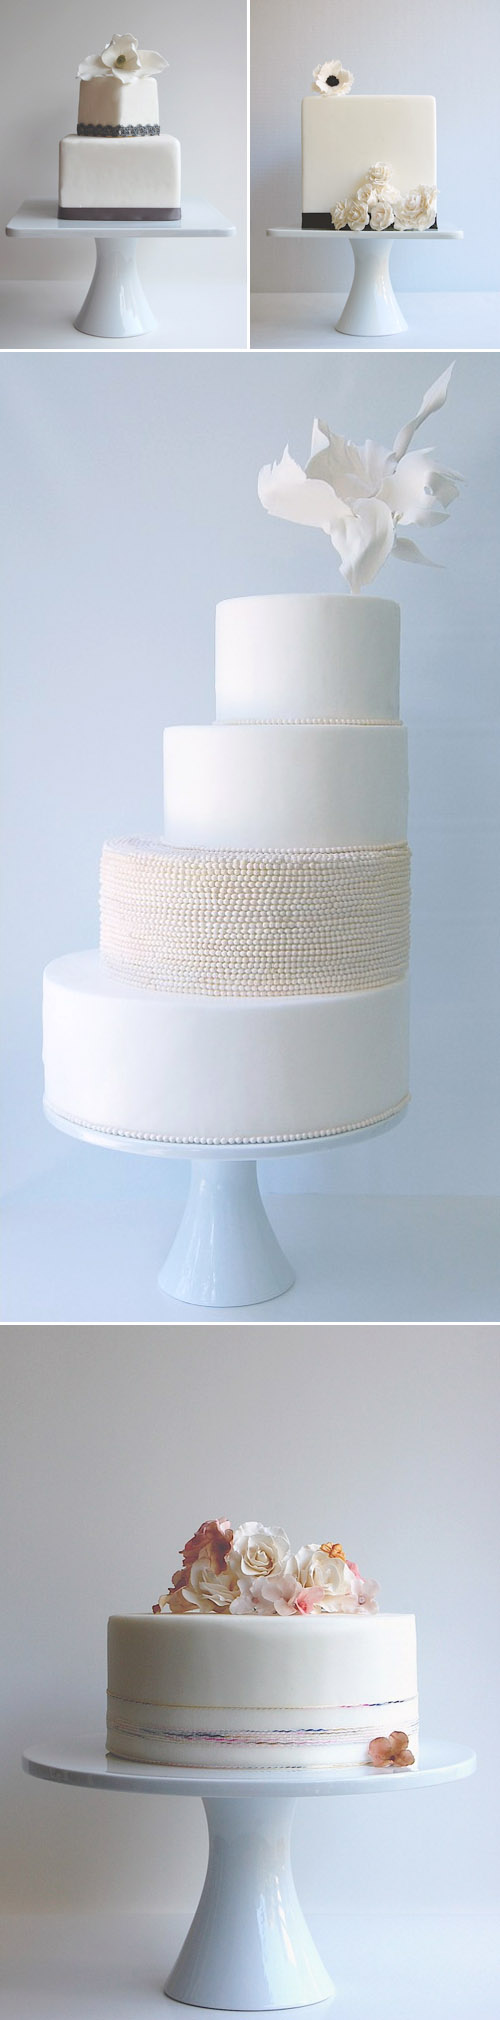 elegant, couture wedding cakes from Maggie Austin Cakes, Washington, D.C.